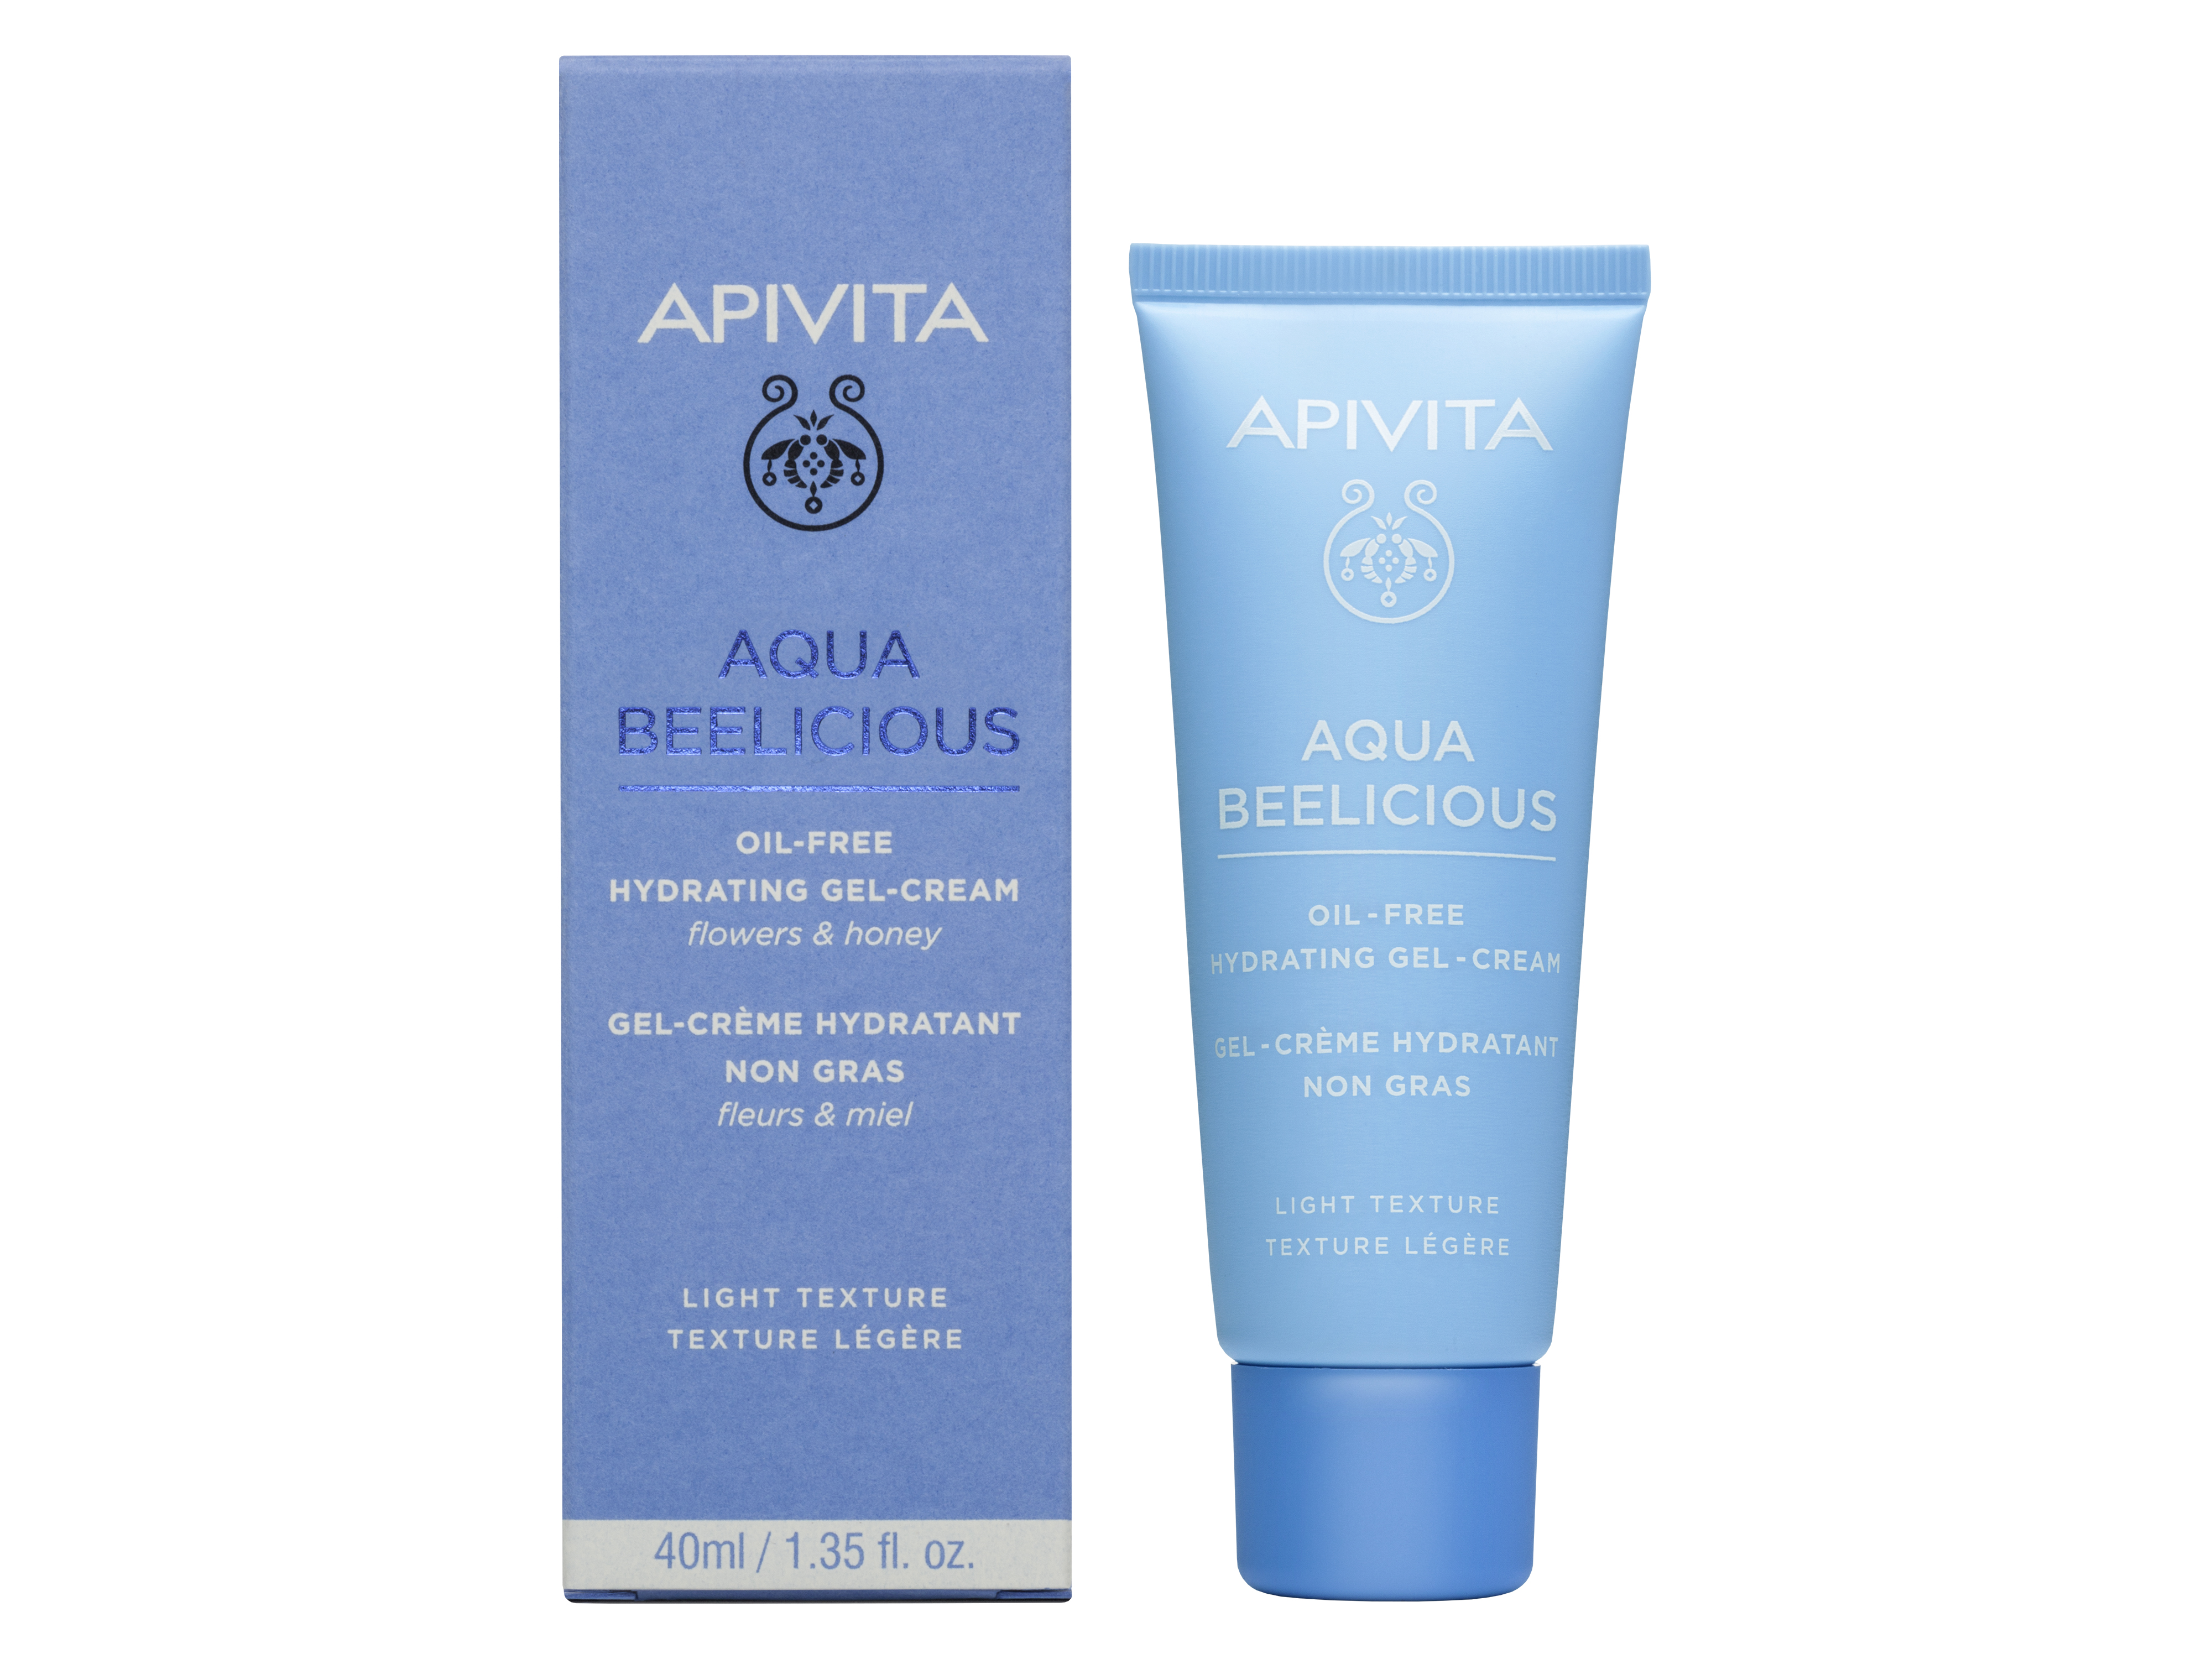 Apivita Apivita Aqua Beelicious Oil-Free Hydrating Gel-Cream, 40 ml